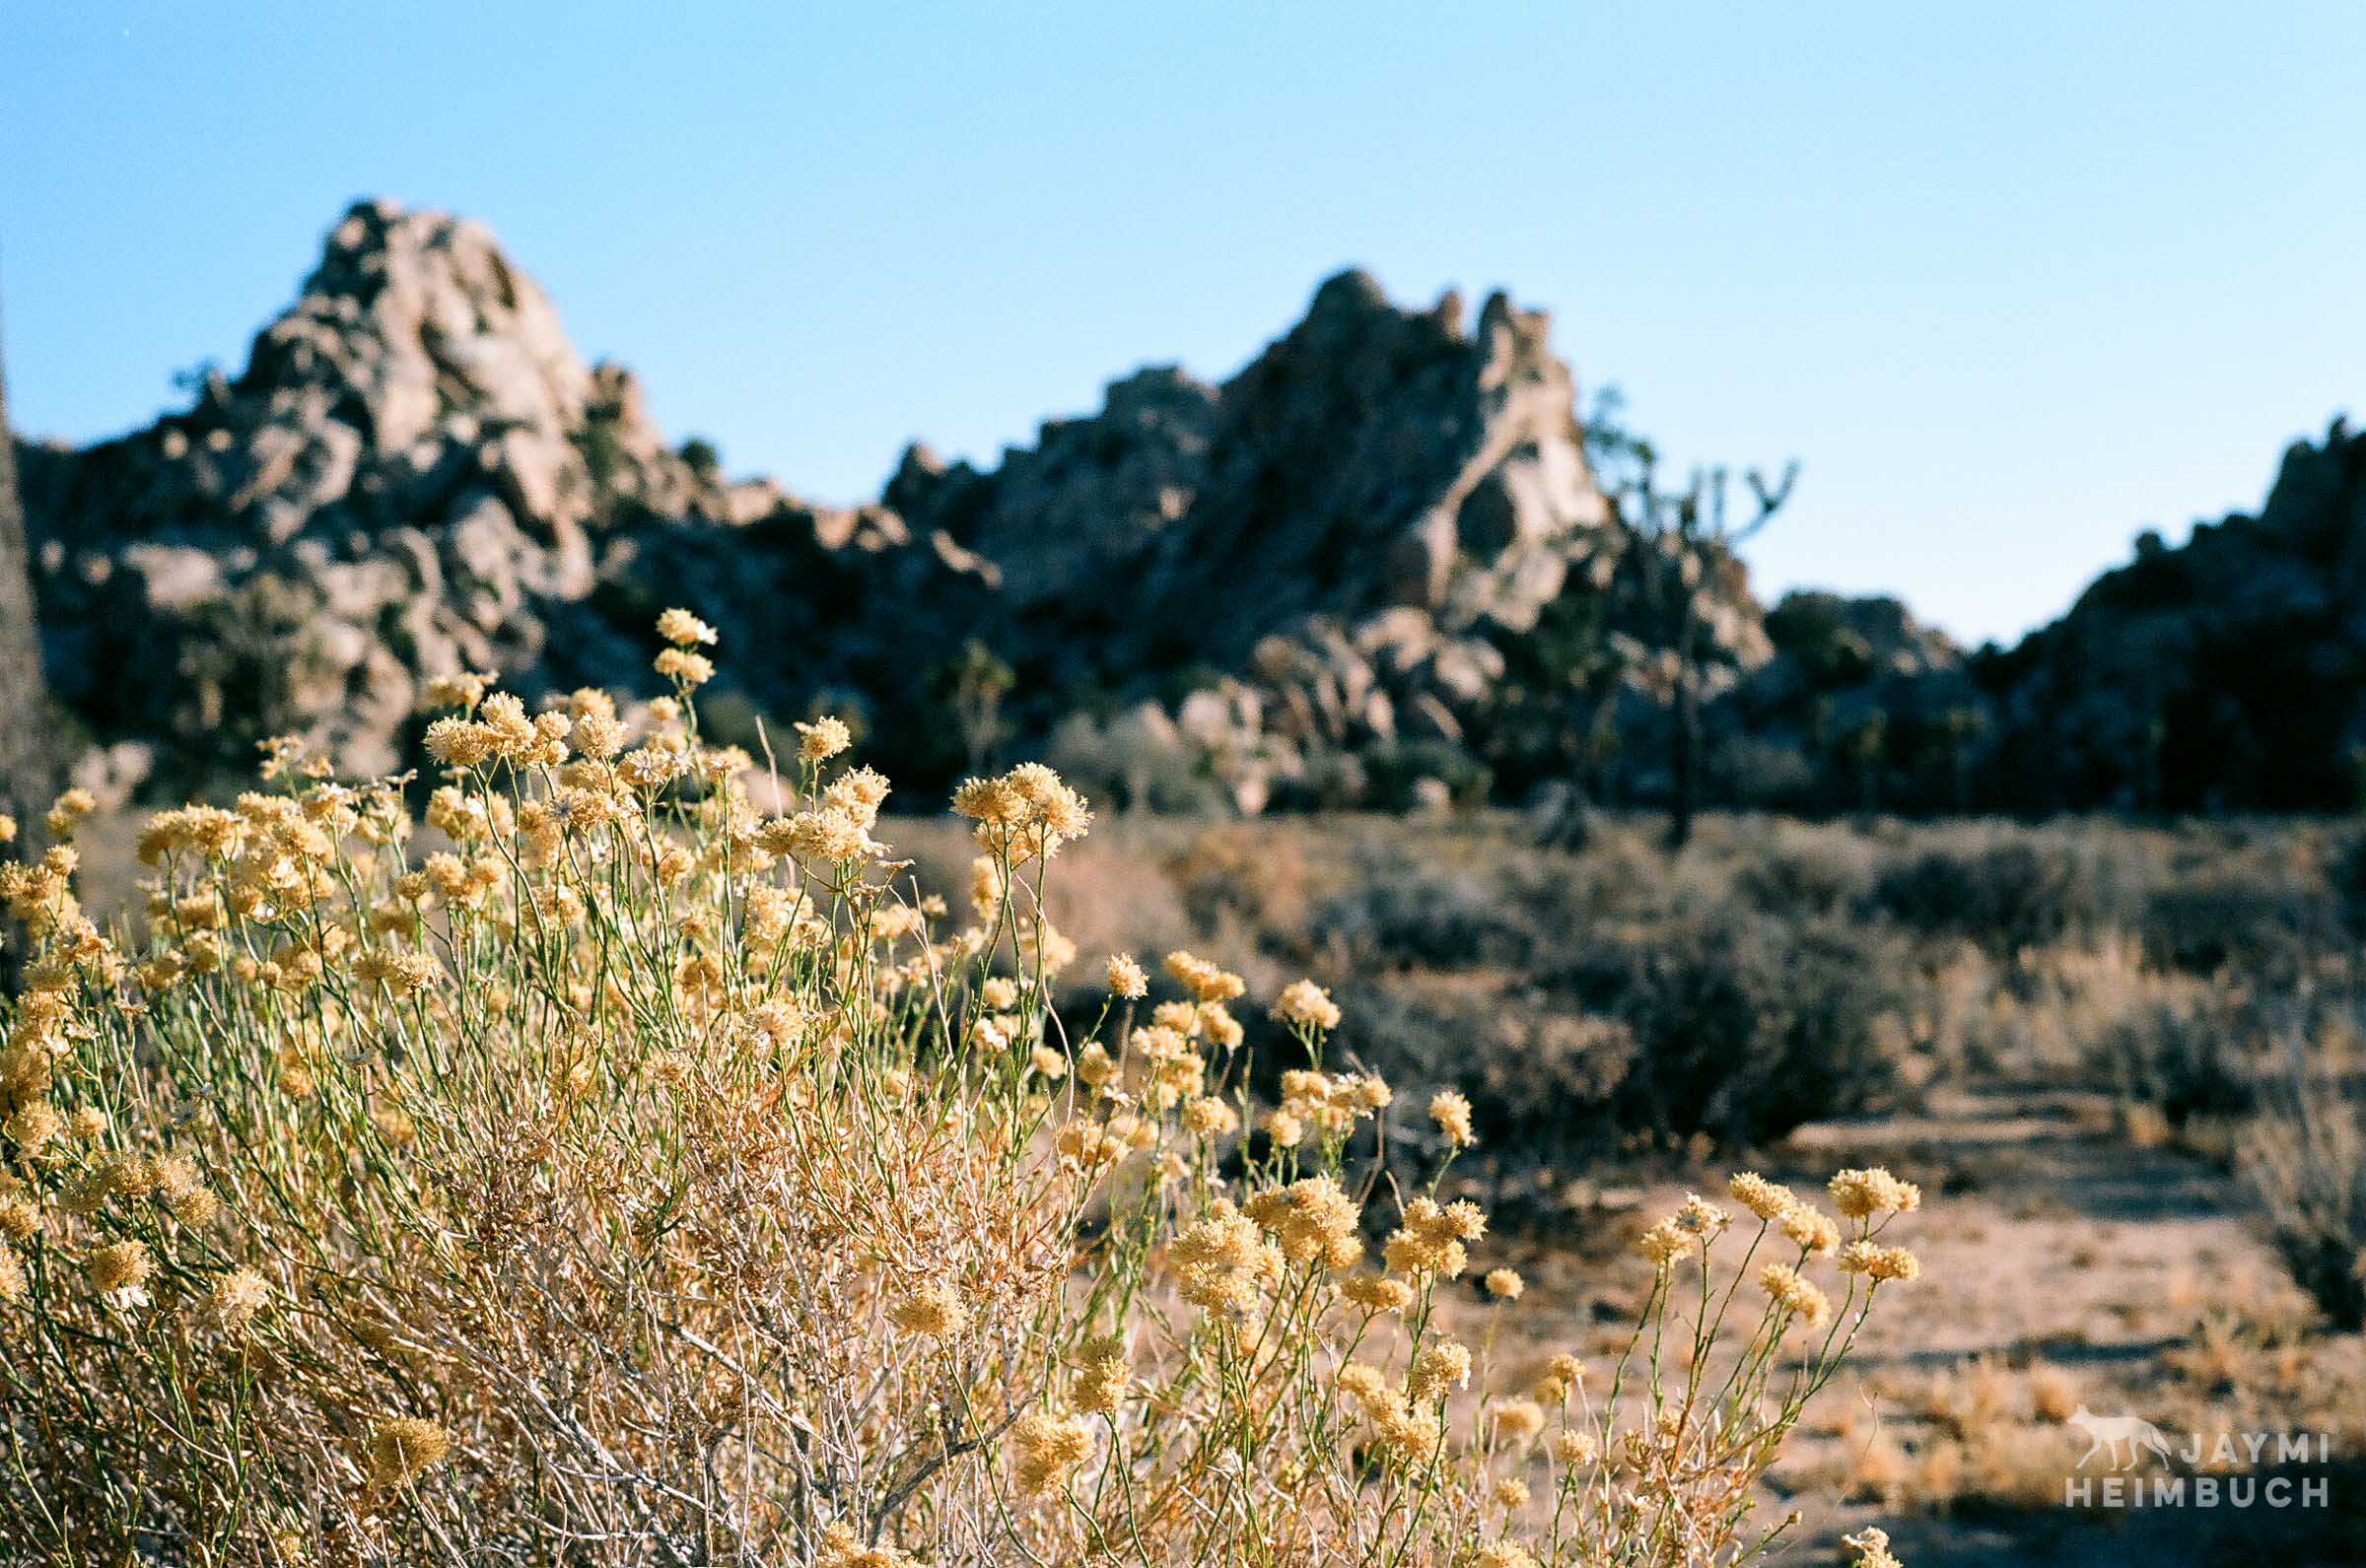 35mm film landscape photograph